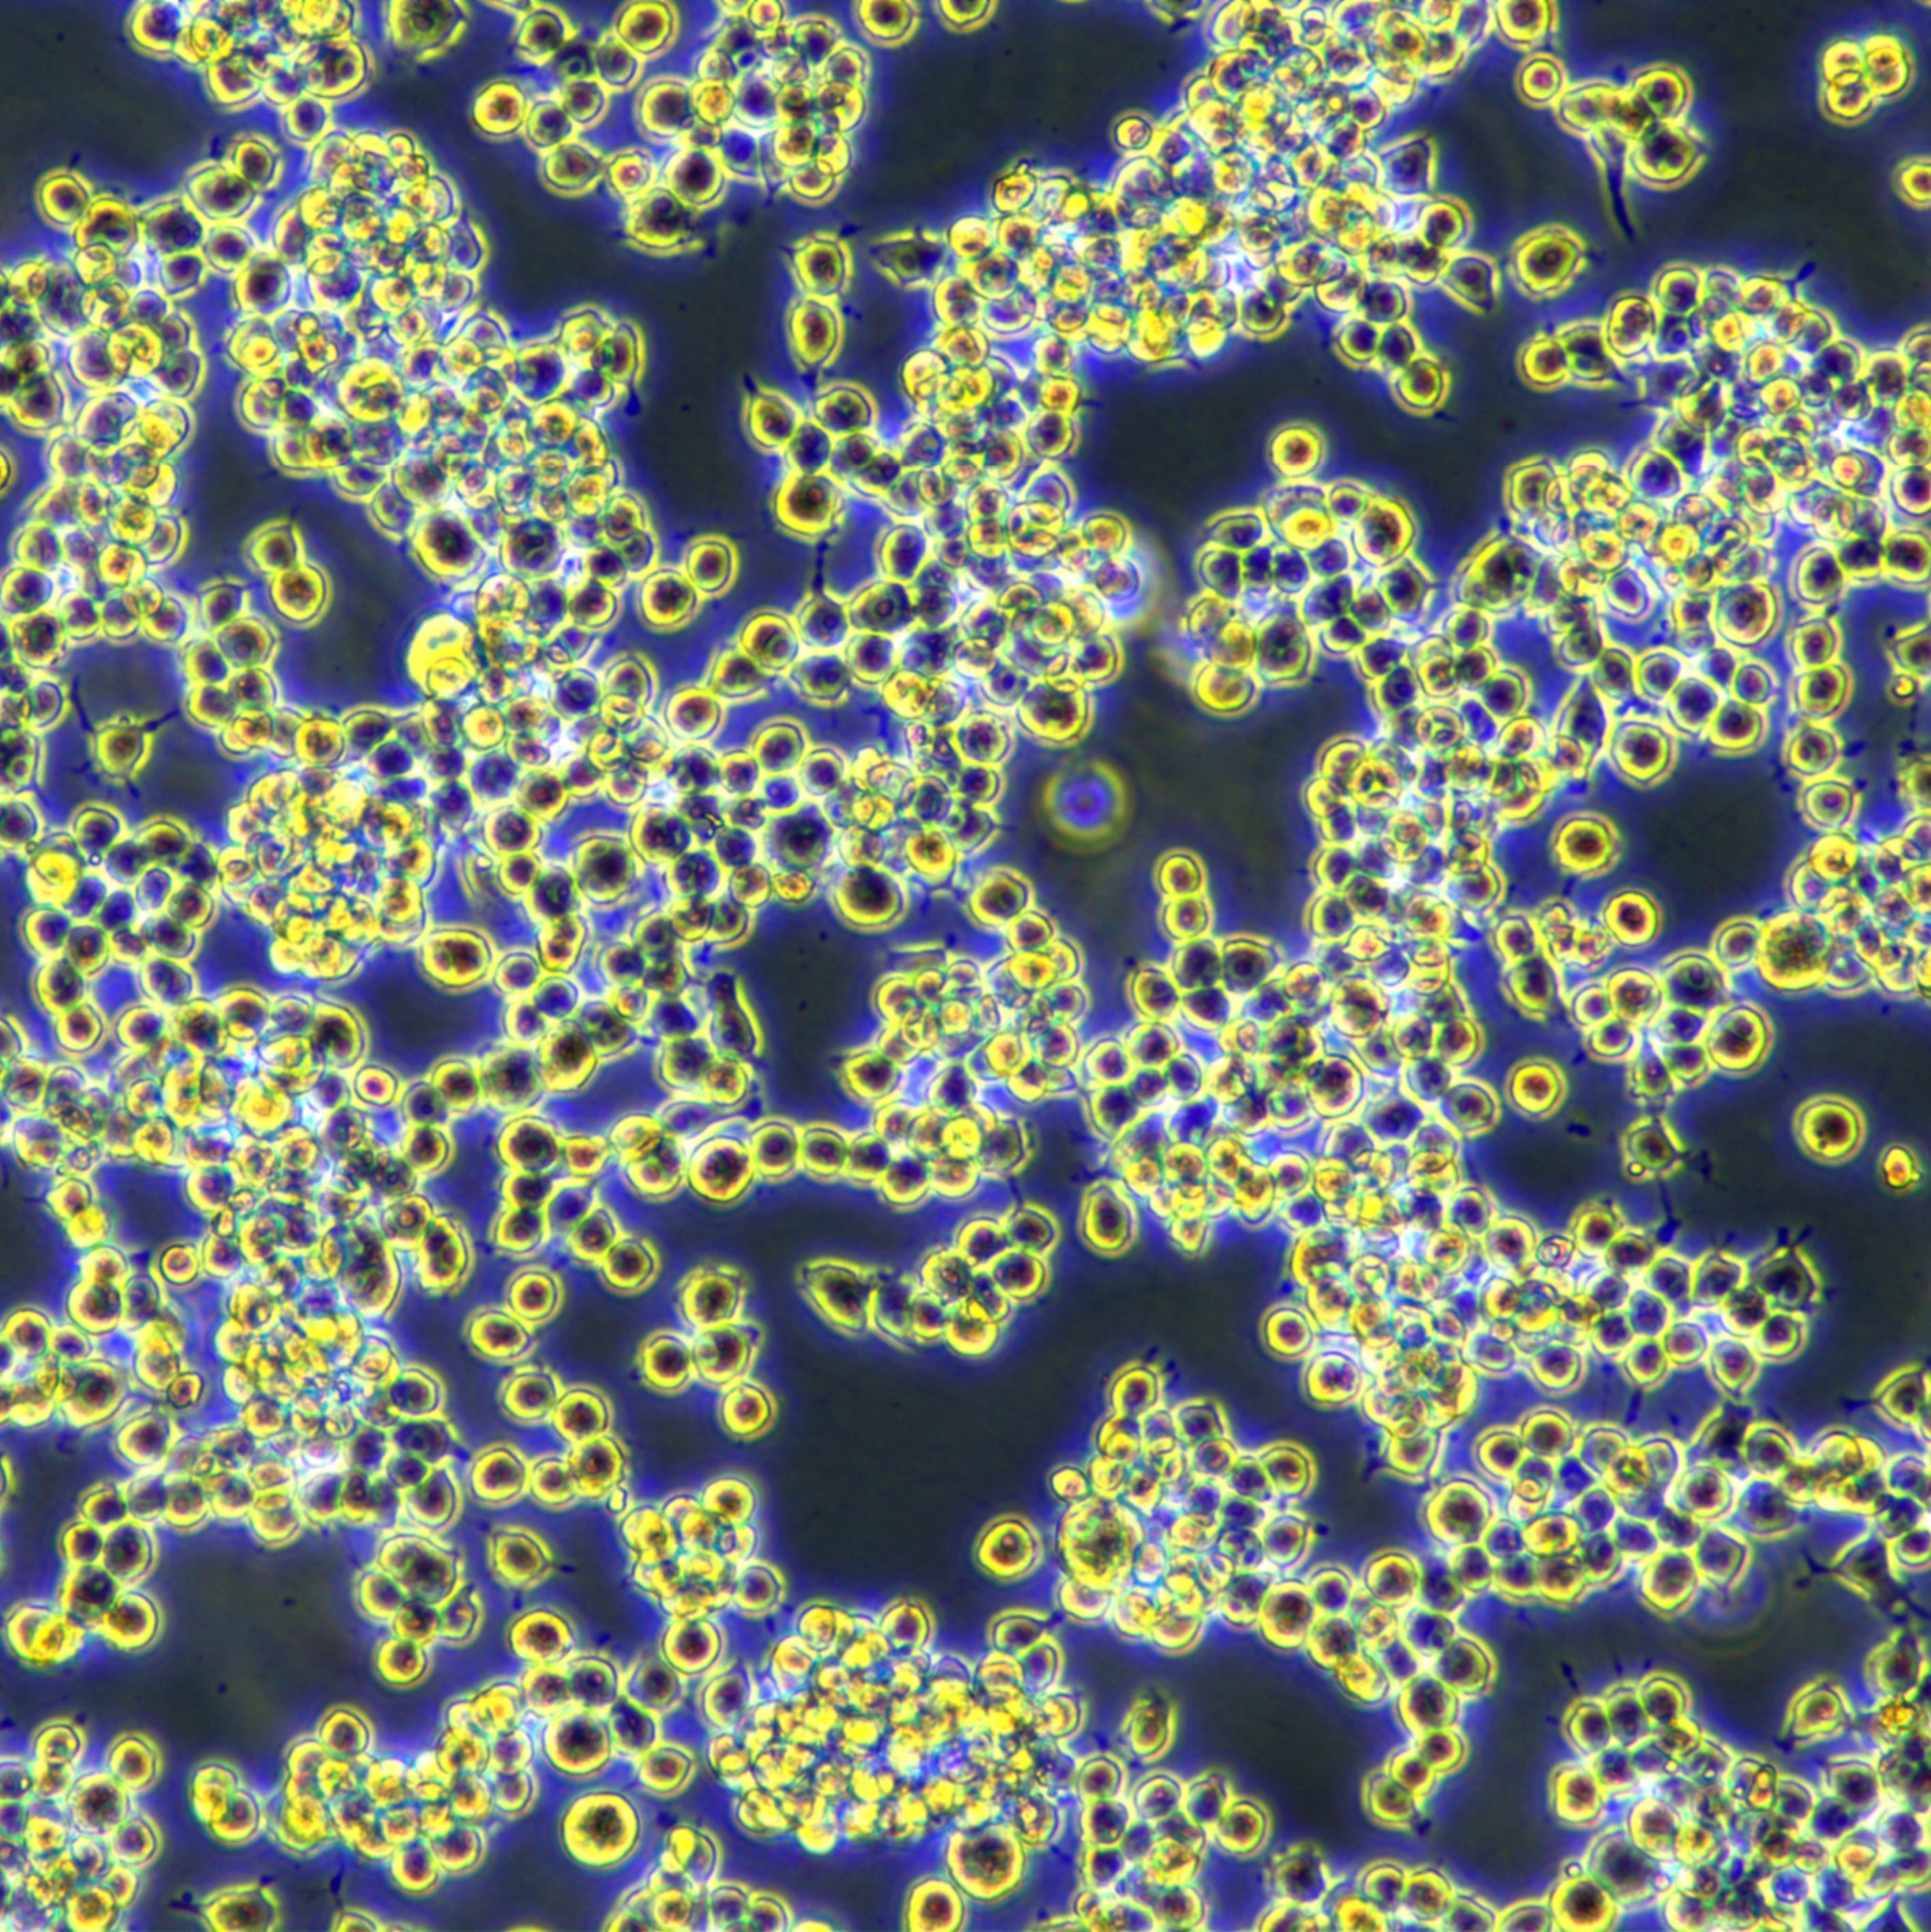 Raw264.7小鼠单核巨噬细胞白血病细胞